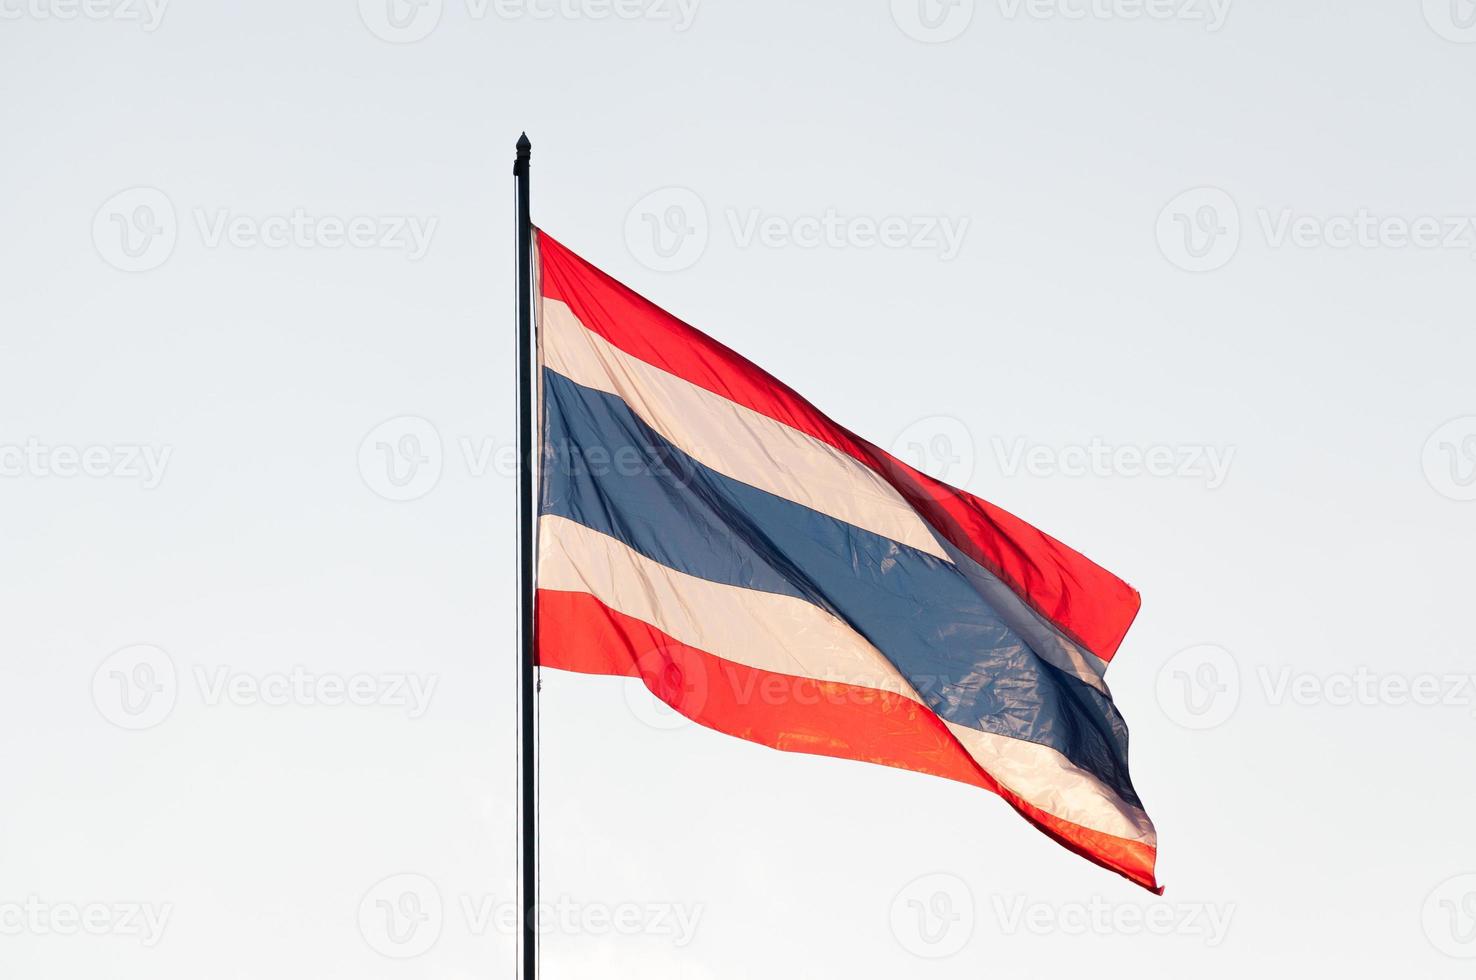 thailand flagga på topp av de Pol i en blåsigt dag skymning foto